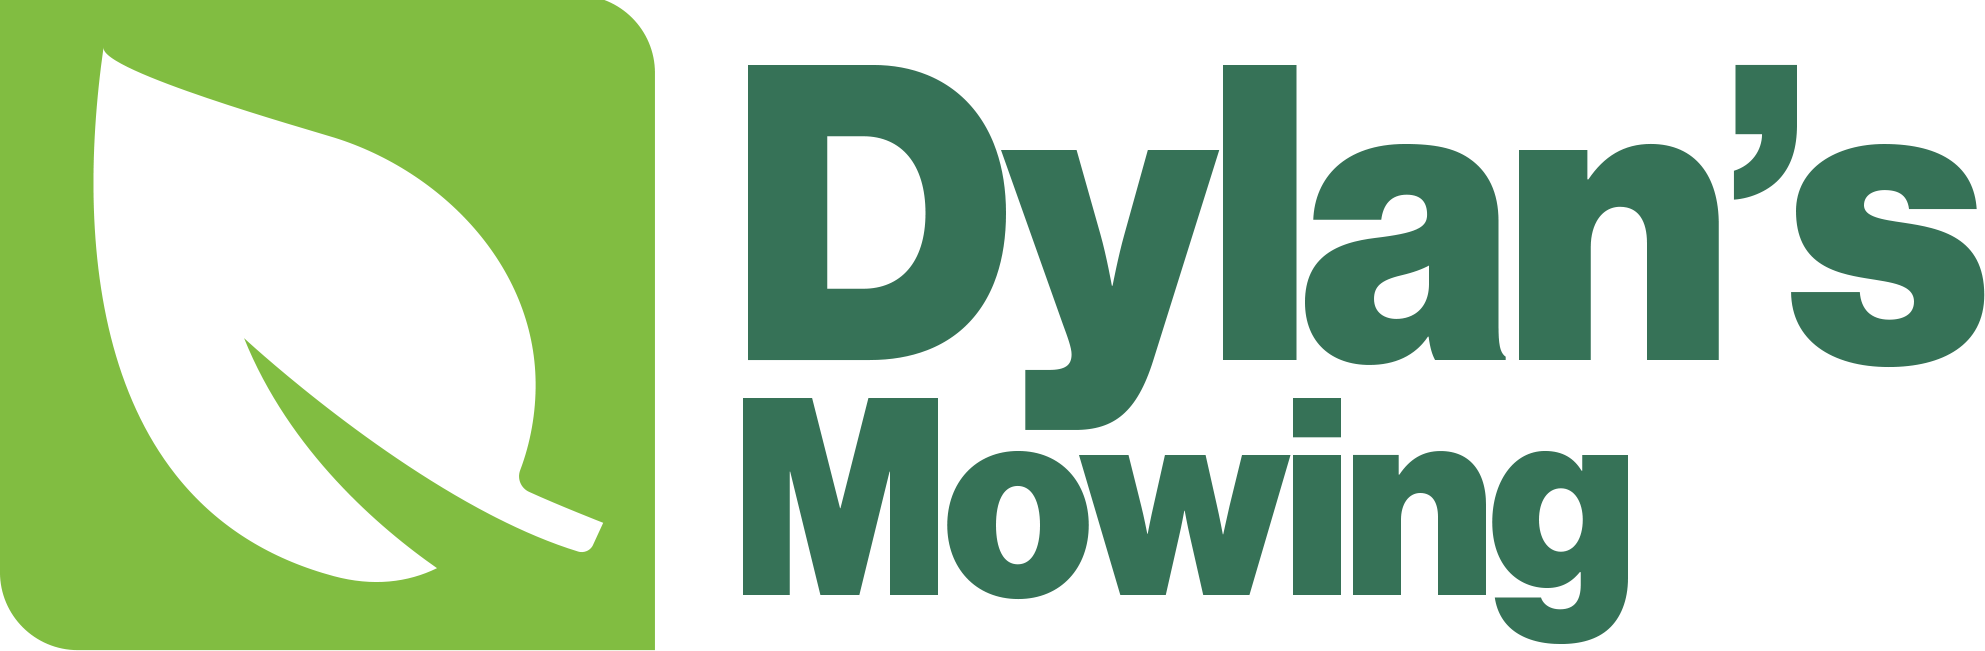 Dylan's Mowing logo